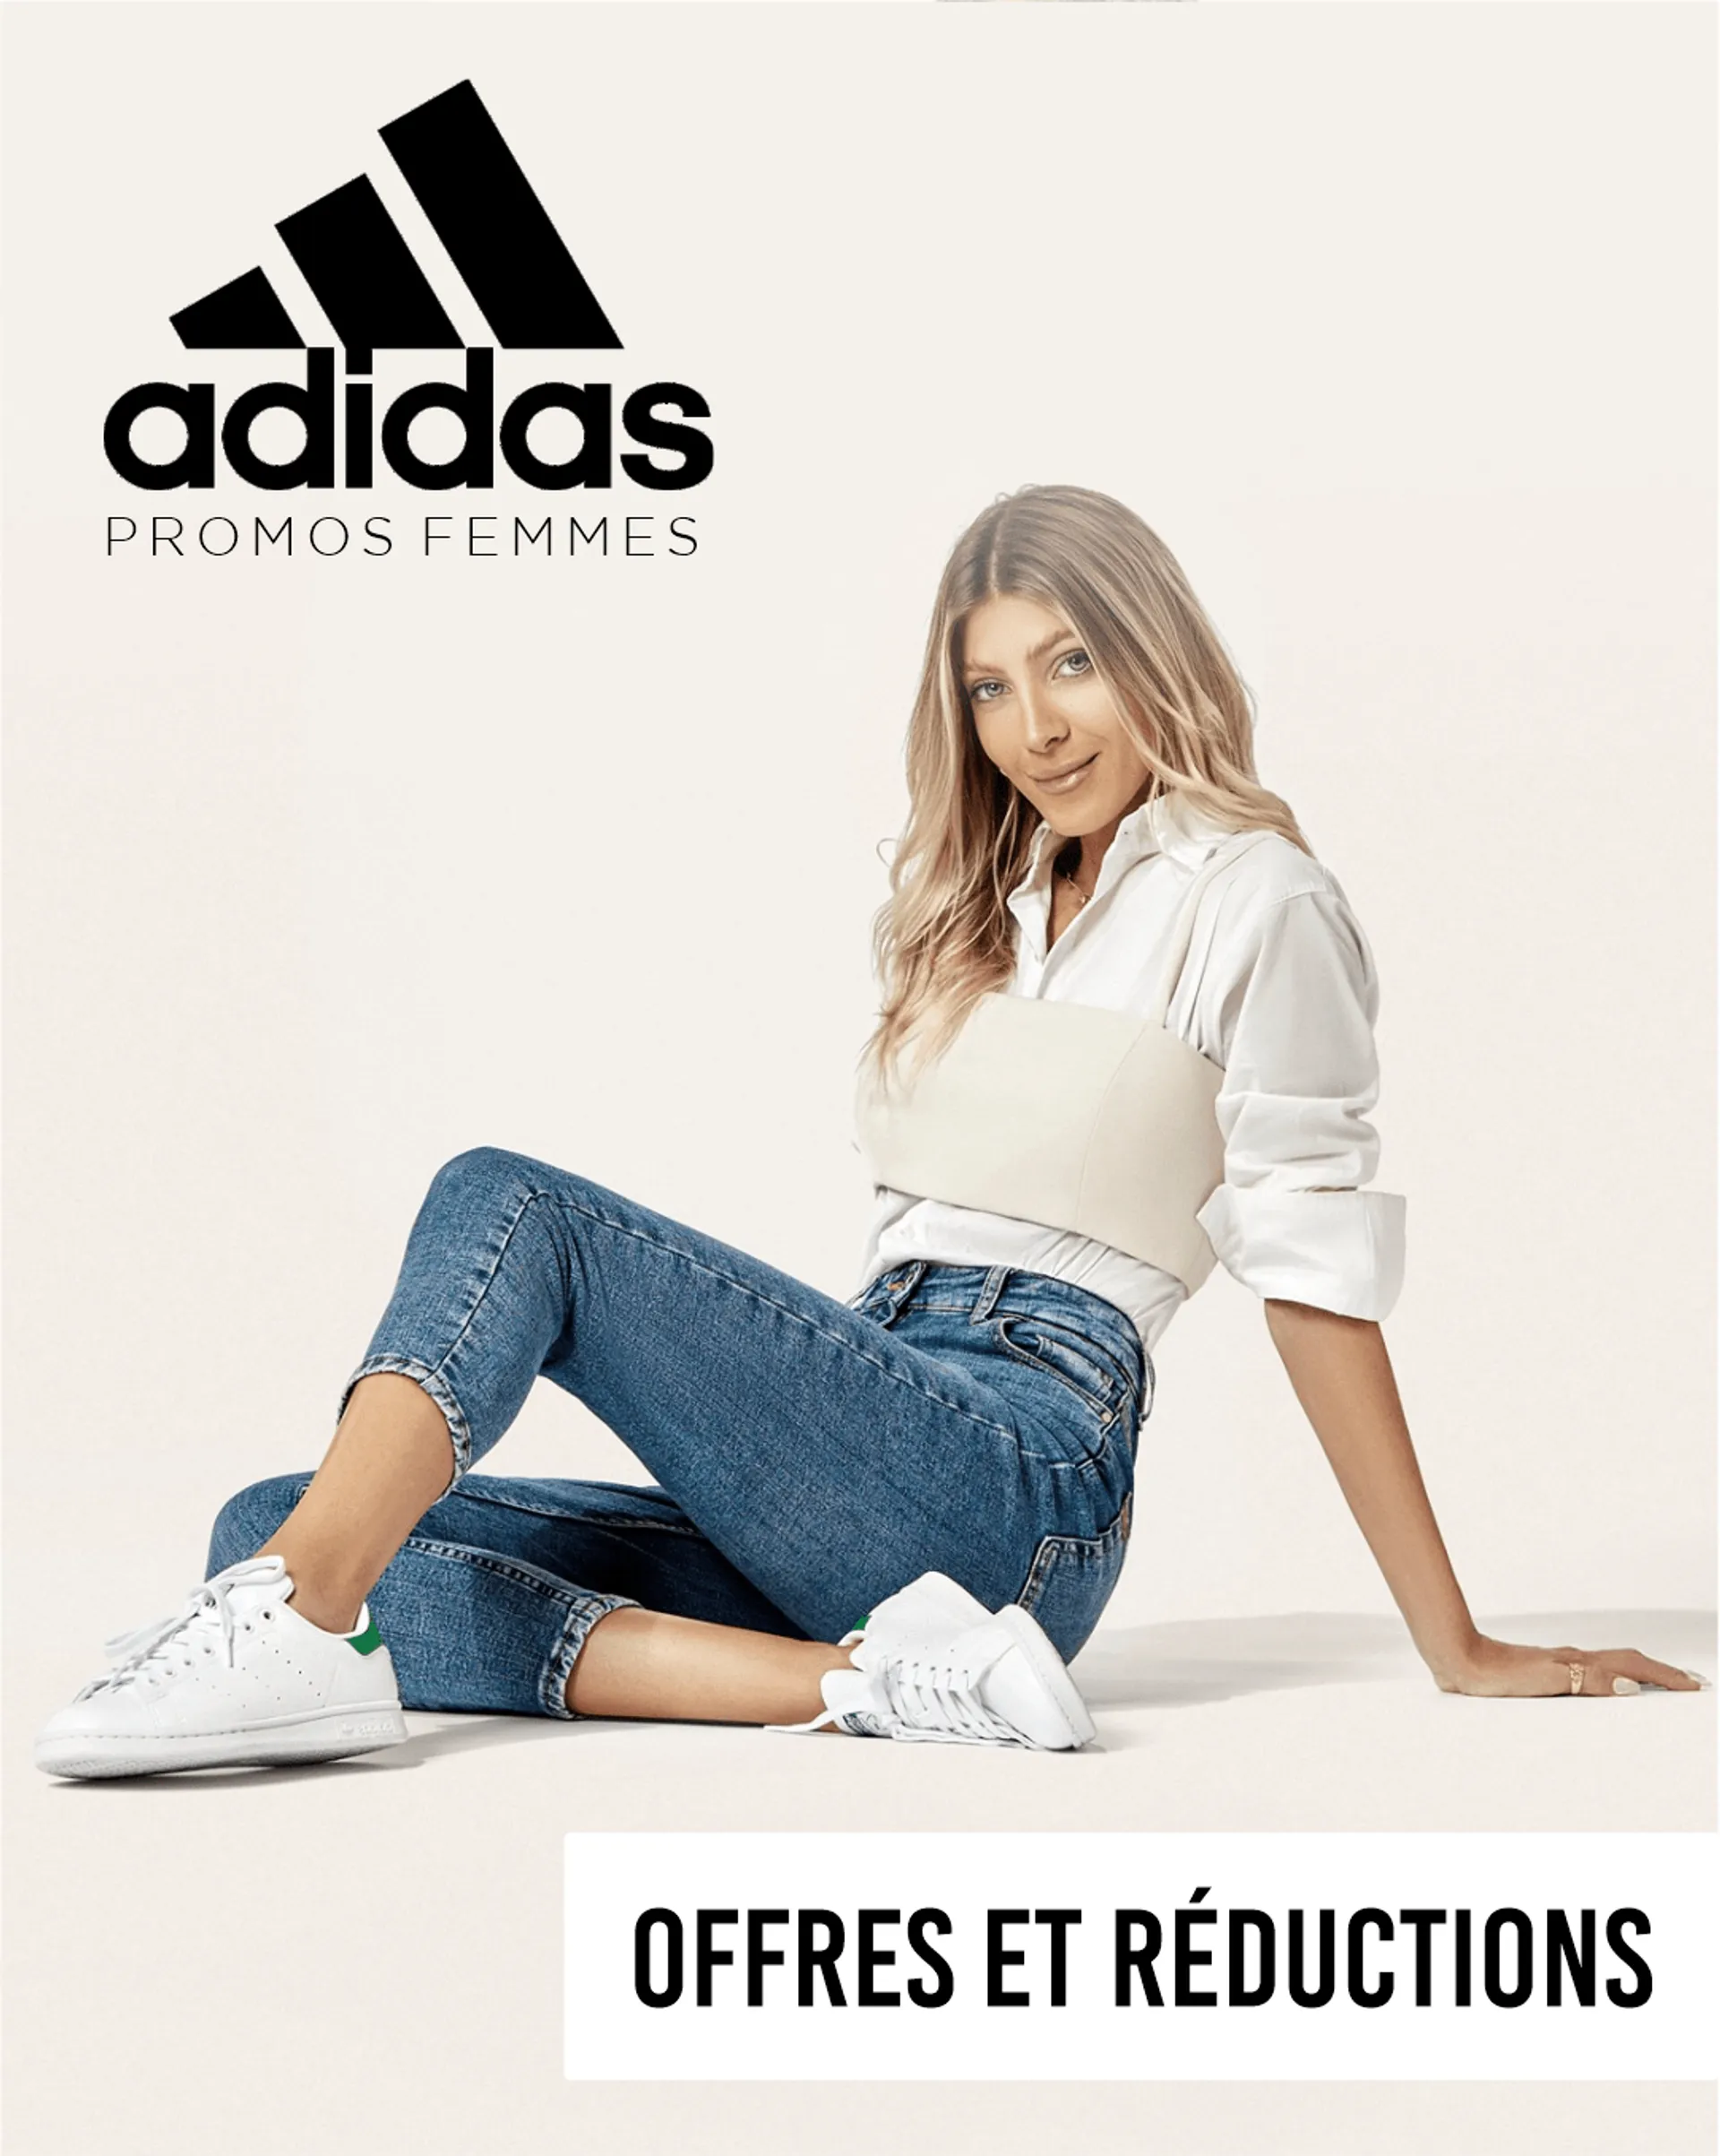 Adidas - promos femmes!